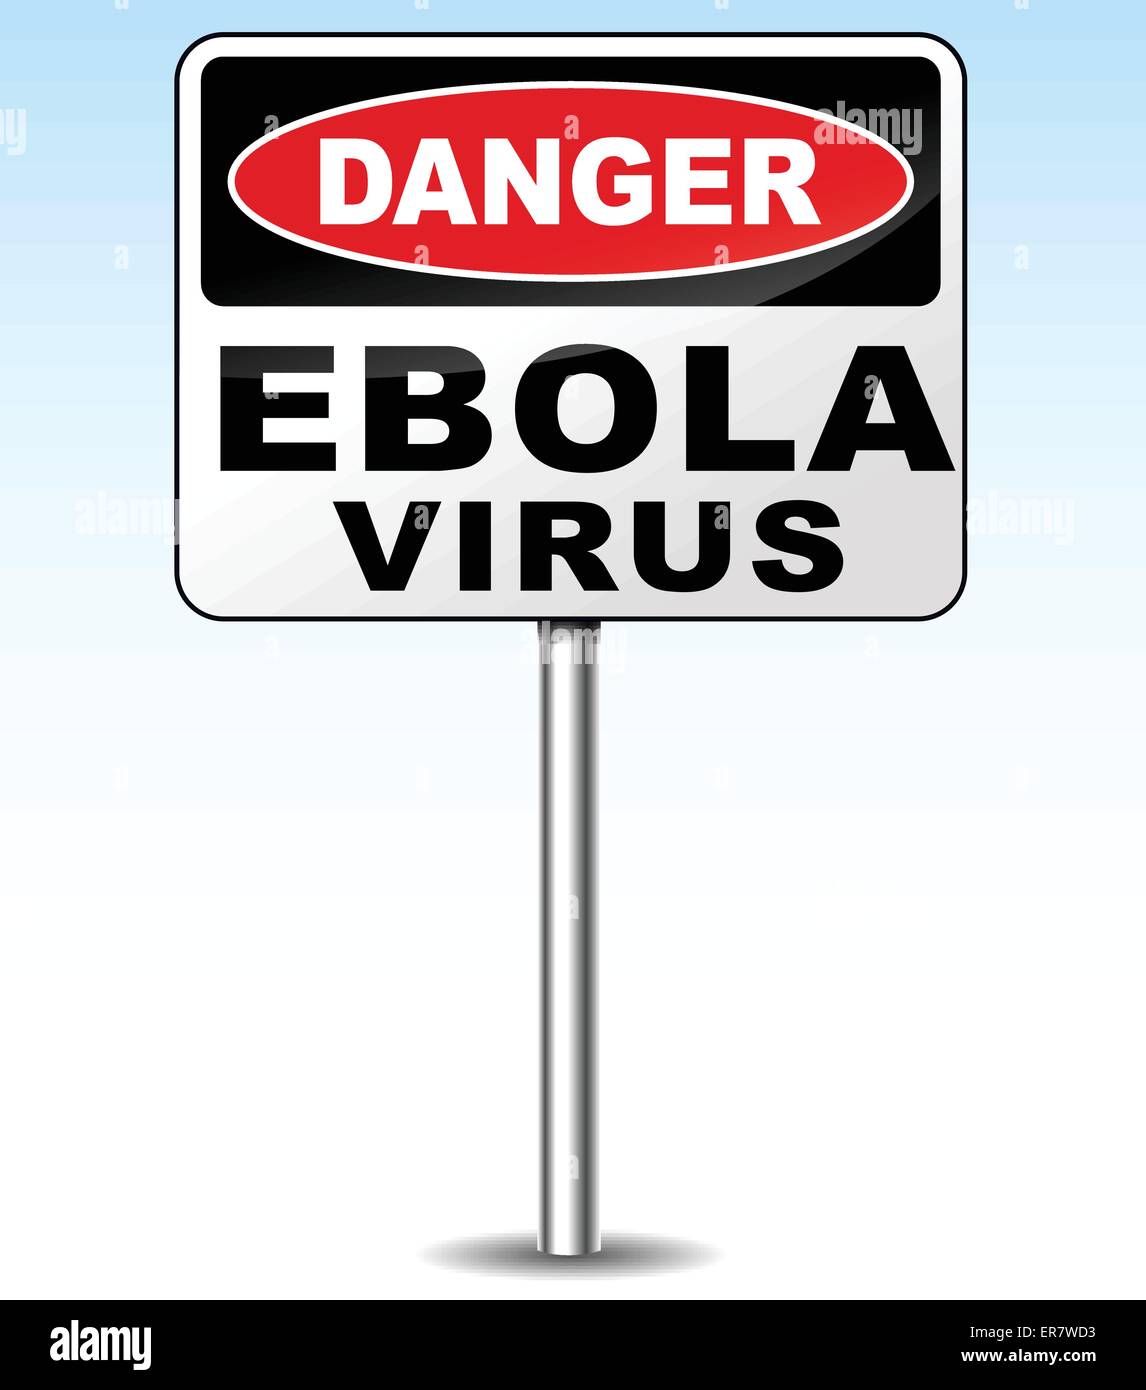 Vektor-Illustration des Ebola-Virus Gefahrenzeichen Stock Vektor